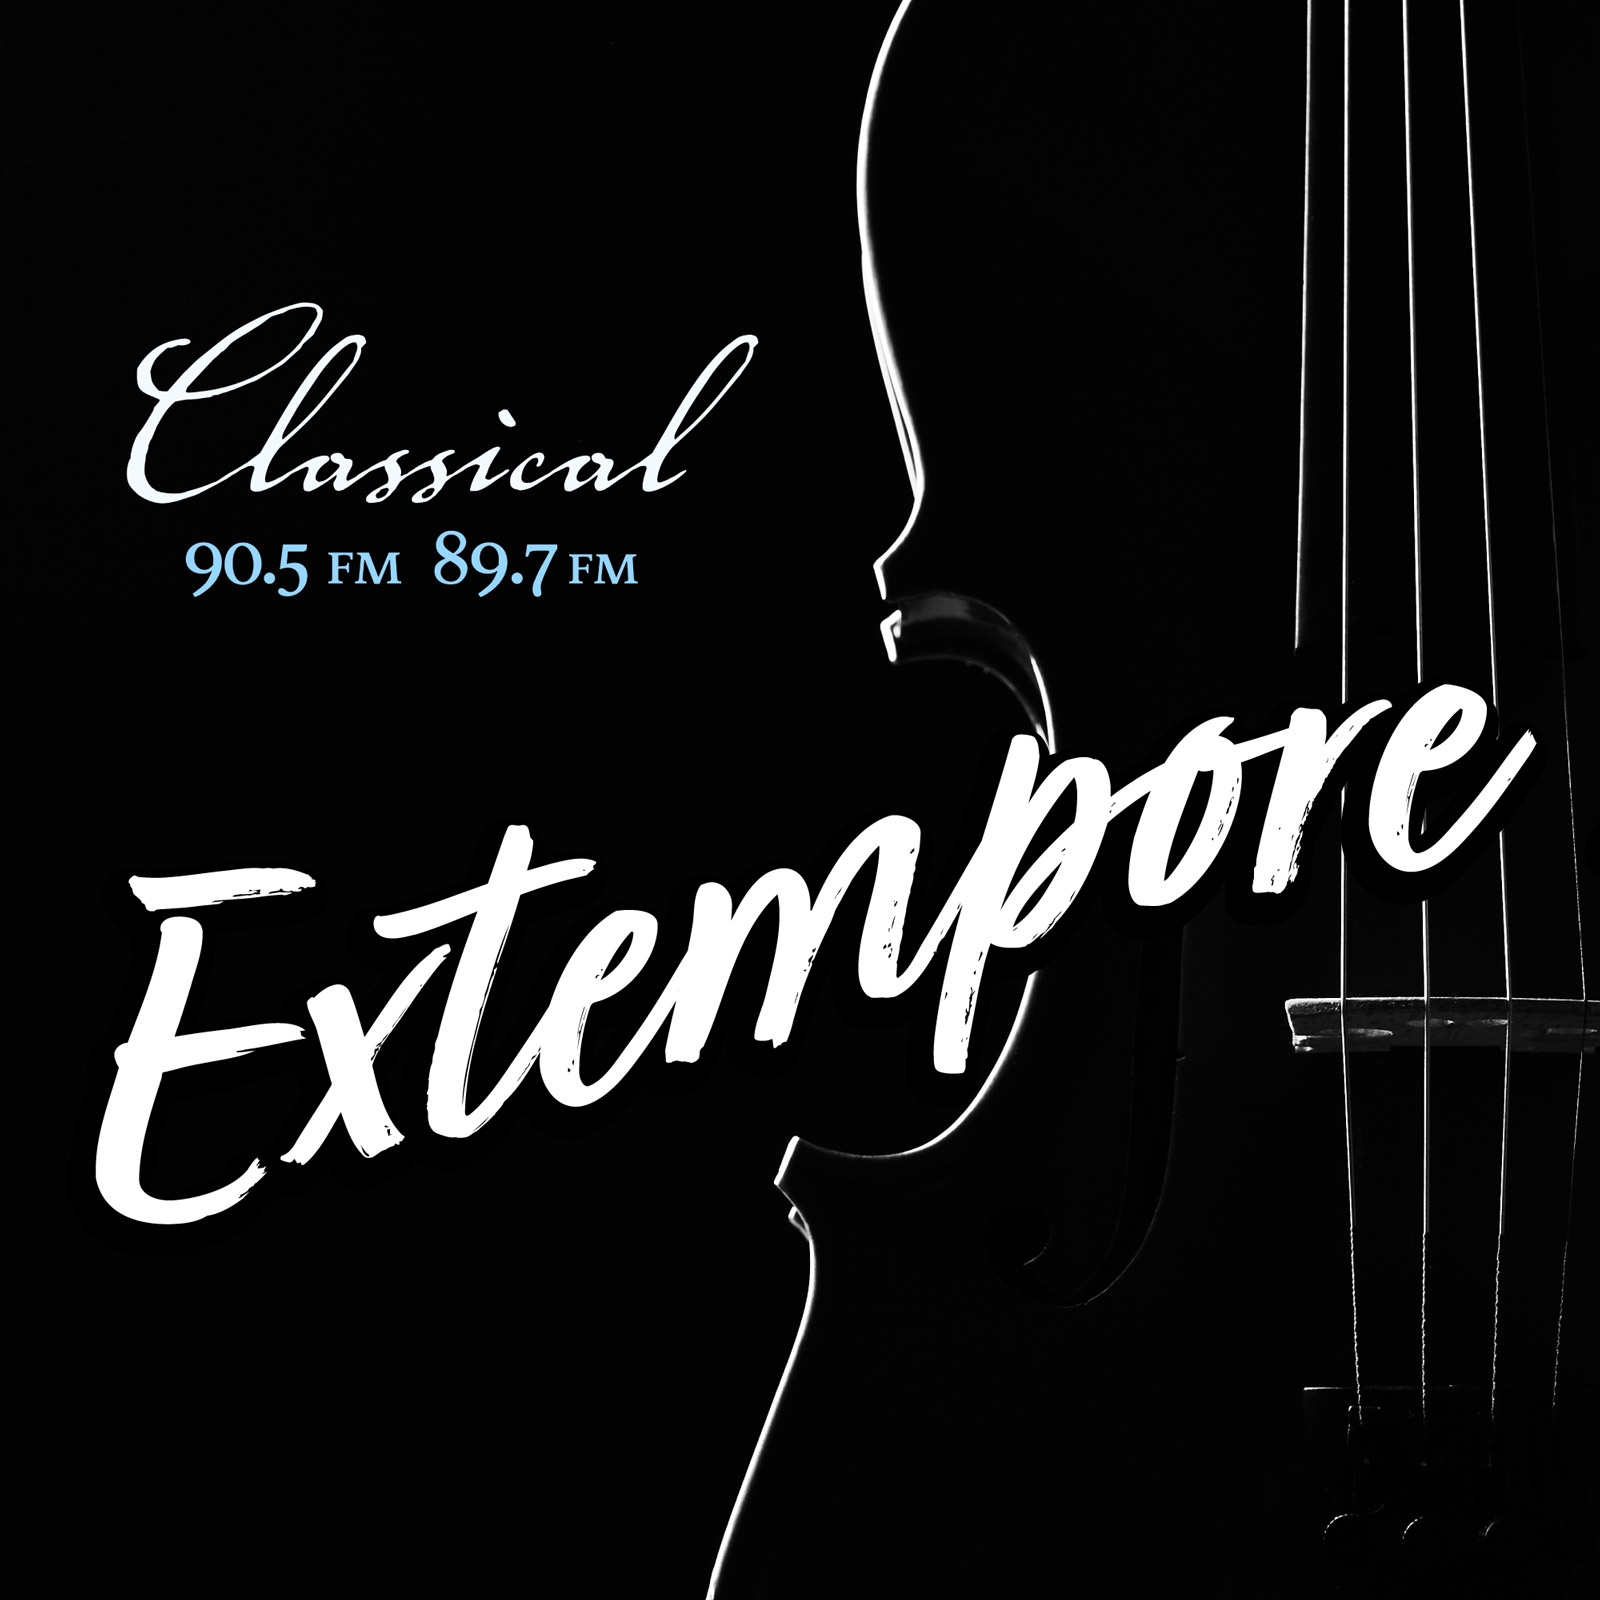 Classical Extempore